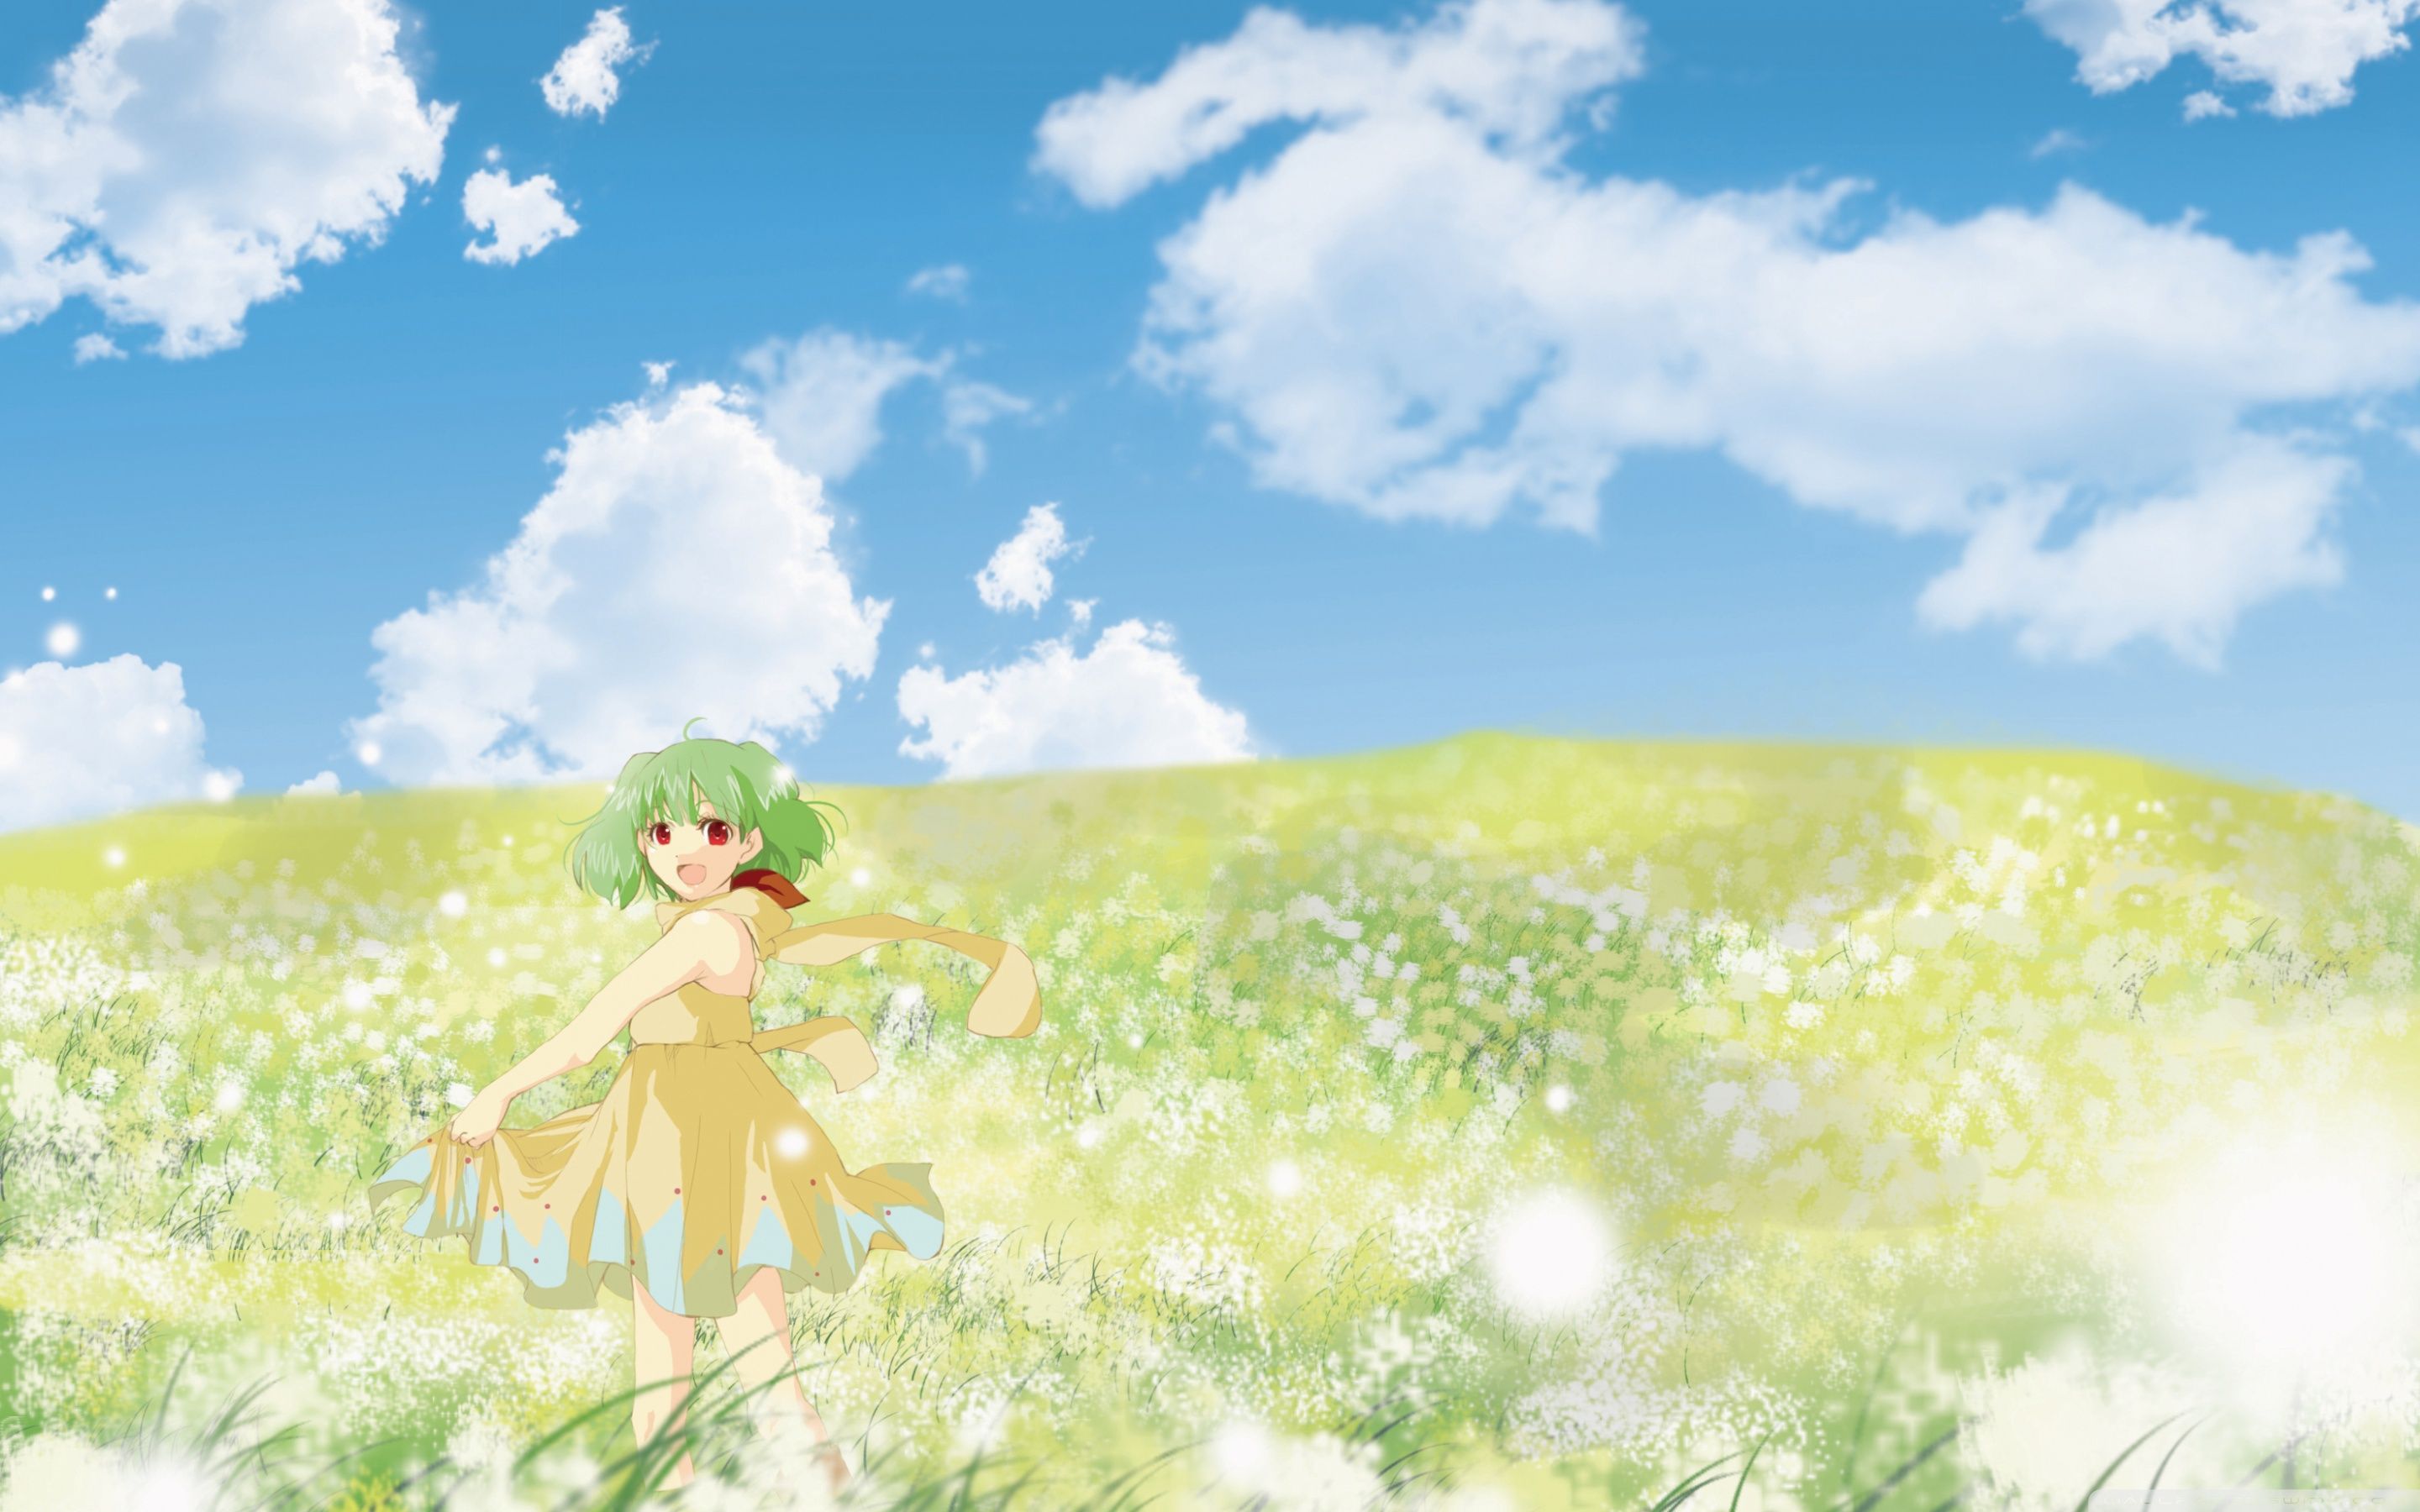 Anime Girl In Flower Field Ultra HD .wallpaperwide.com